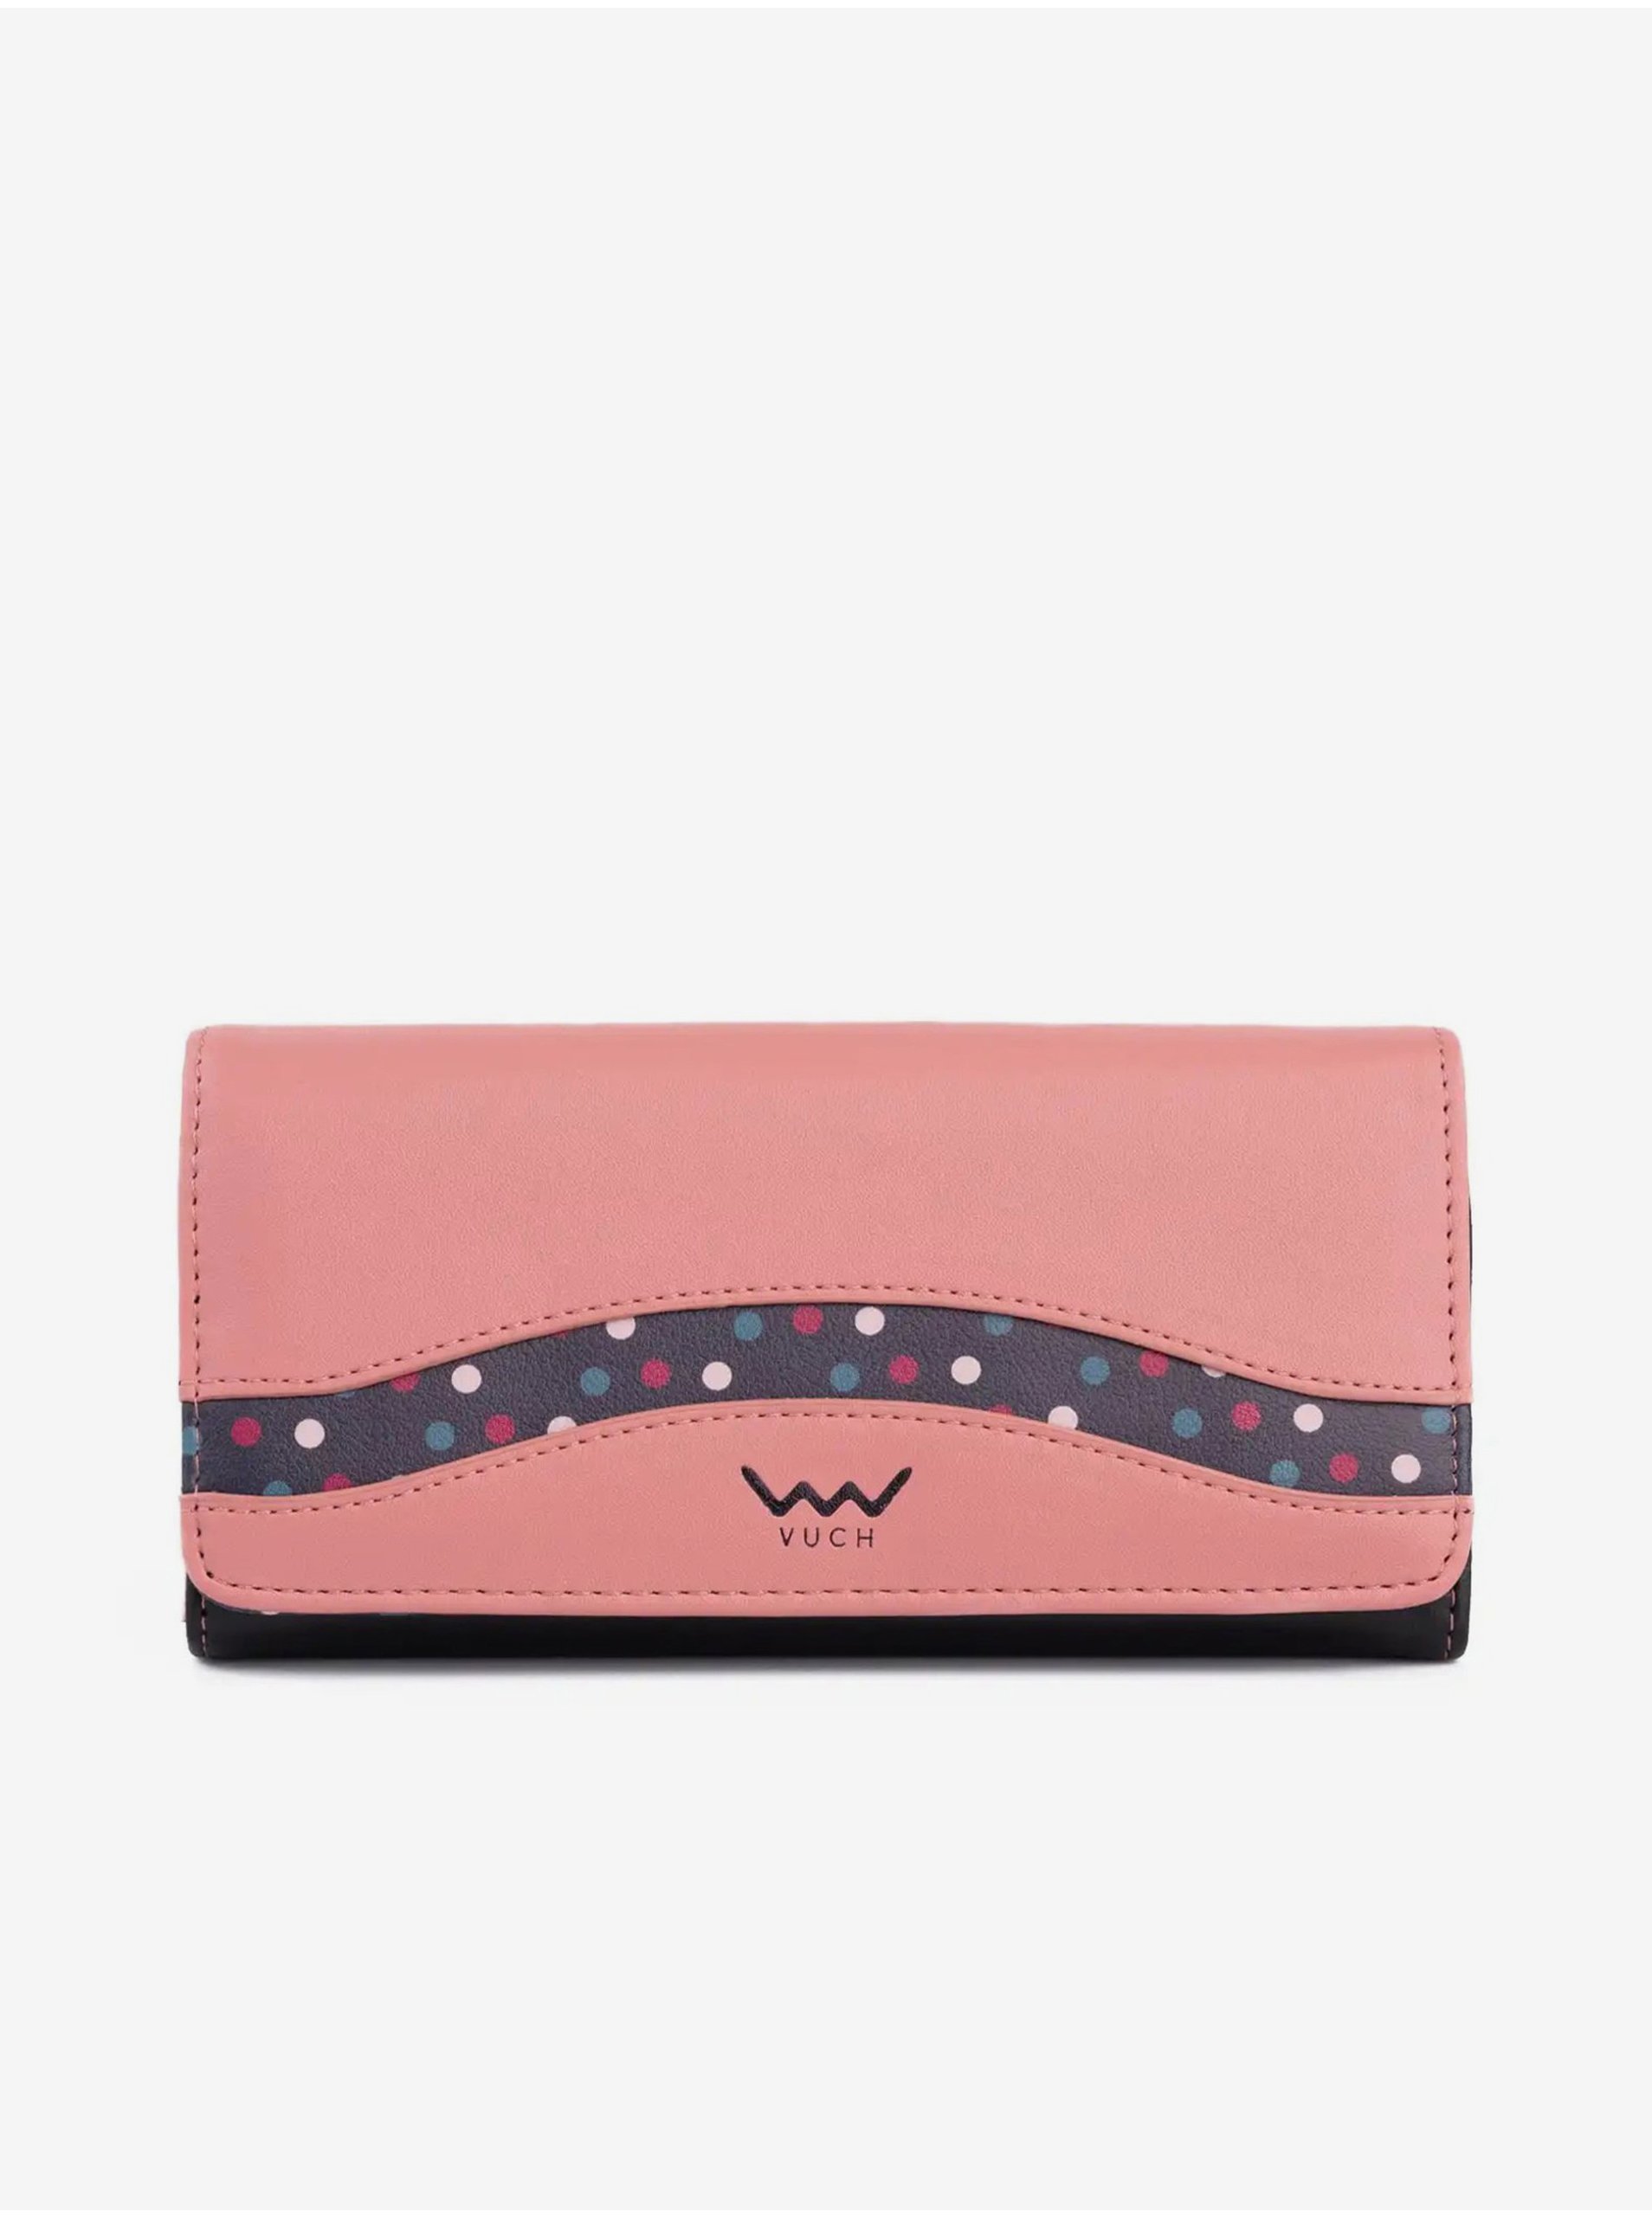 E-shop Peňaženky pre ženy Vuch - ružová, fialová, čierna